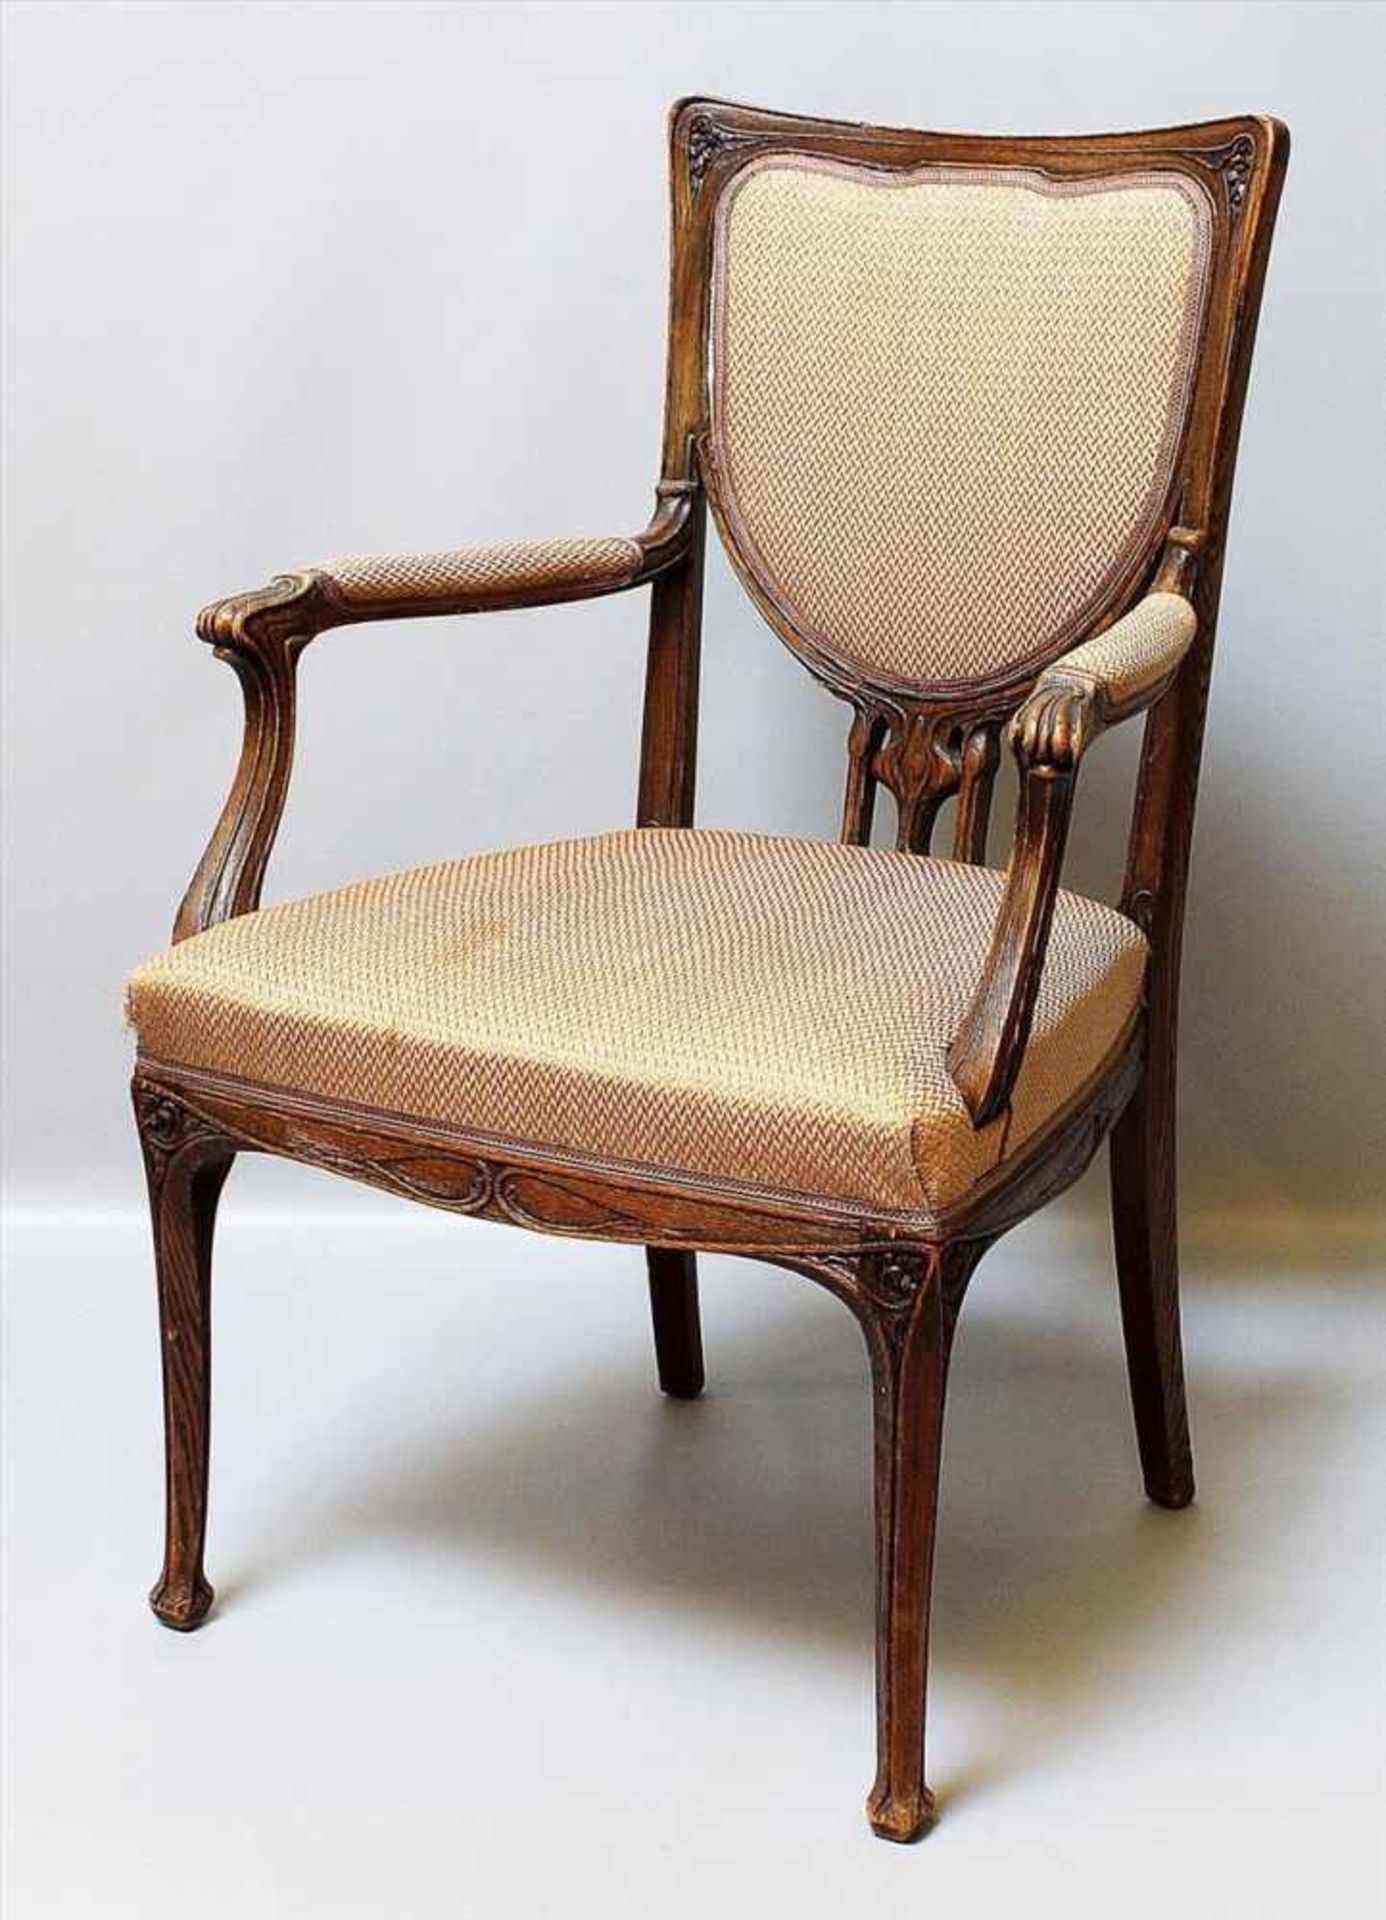 Jugendstil-Armlehnstuhl.Hölzernes Gestell mit reliefiertem Dekor. Sitzfläche und Rückenlehne mit